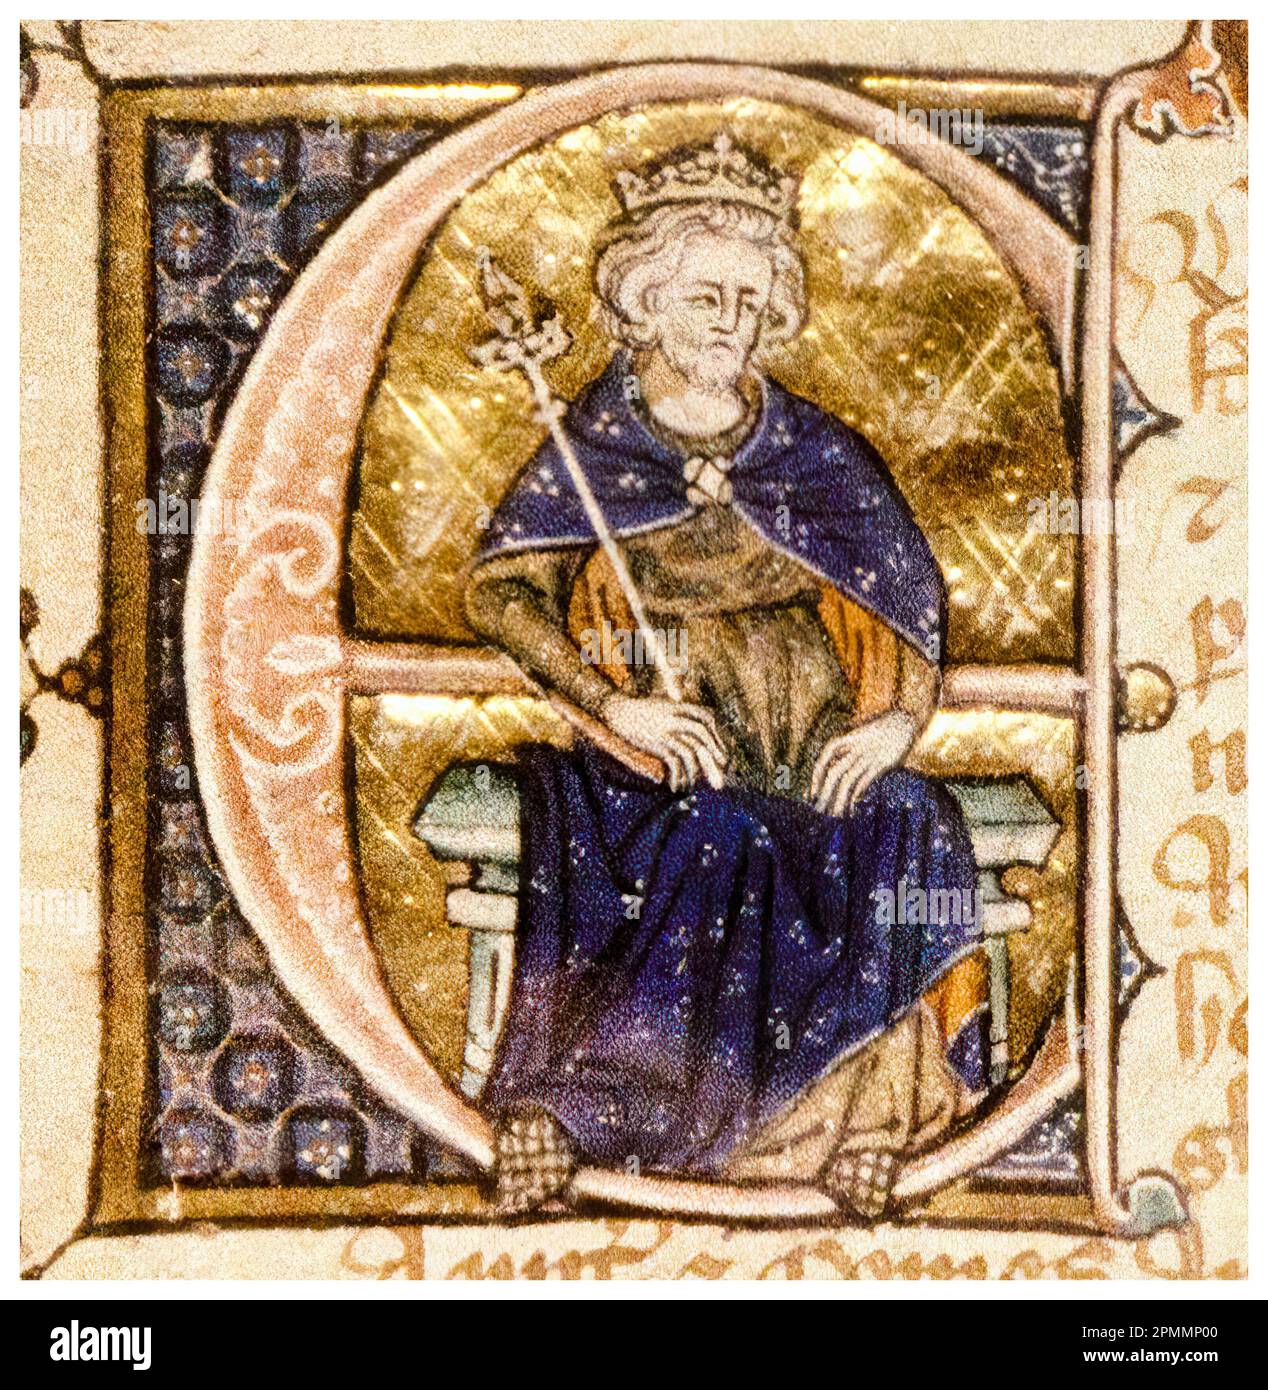 Edward II d'Angleterre (1284-1327), également appelé Edward de Caernarfon, roi d'Angleterre (1307-1327), peinture manuscrite lumineuse de portrait, vers 1320 Banque D'Images